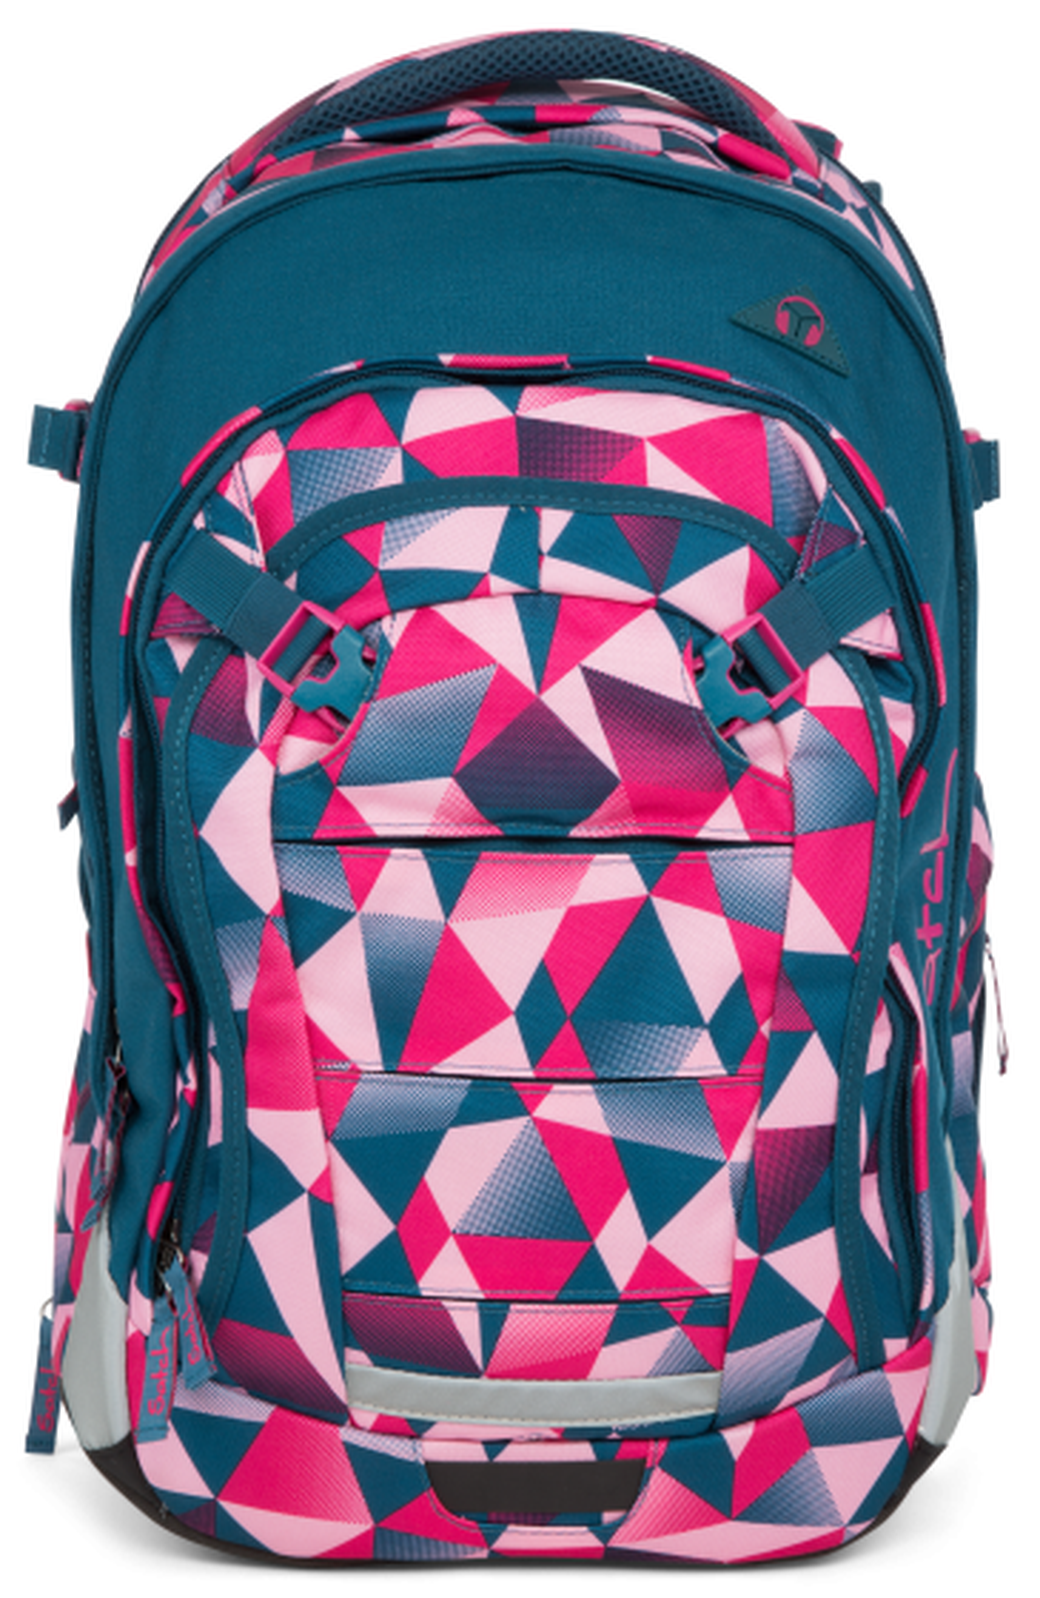 Рюкзак школьный Satch Match розовый Crush с анатомической спинкой фото